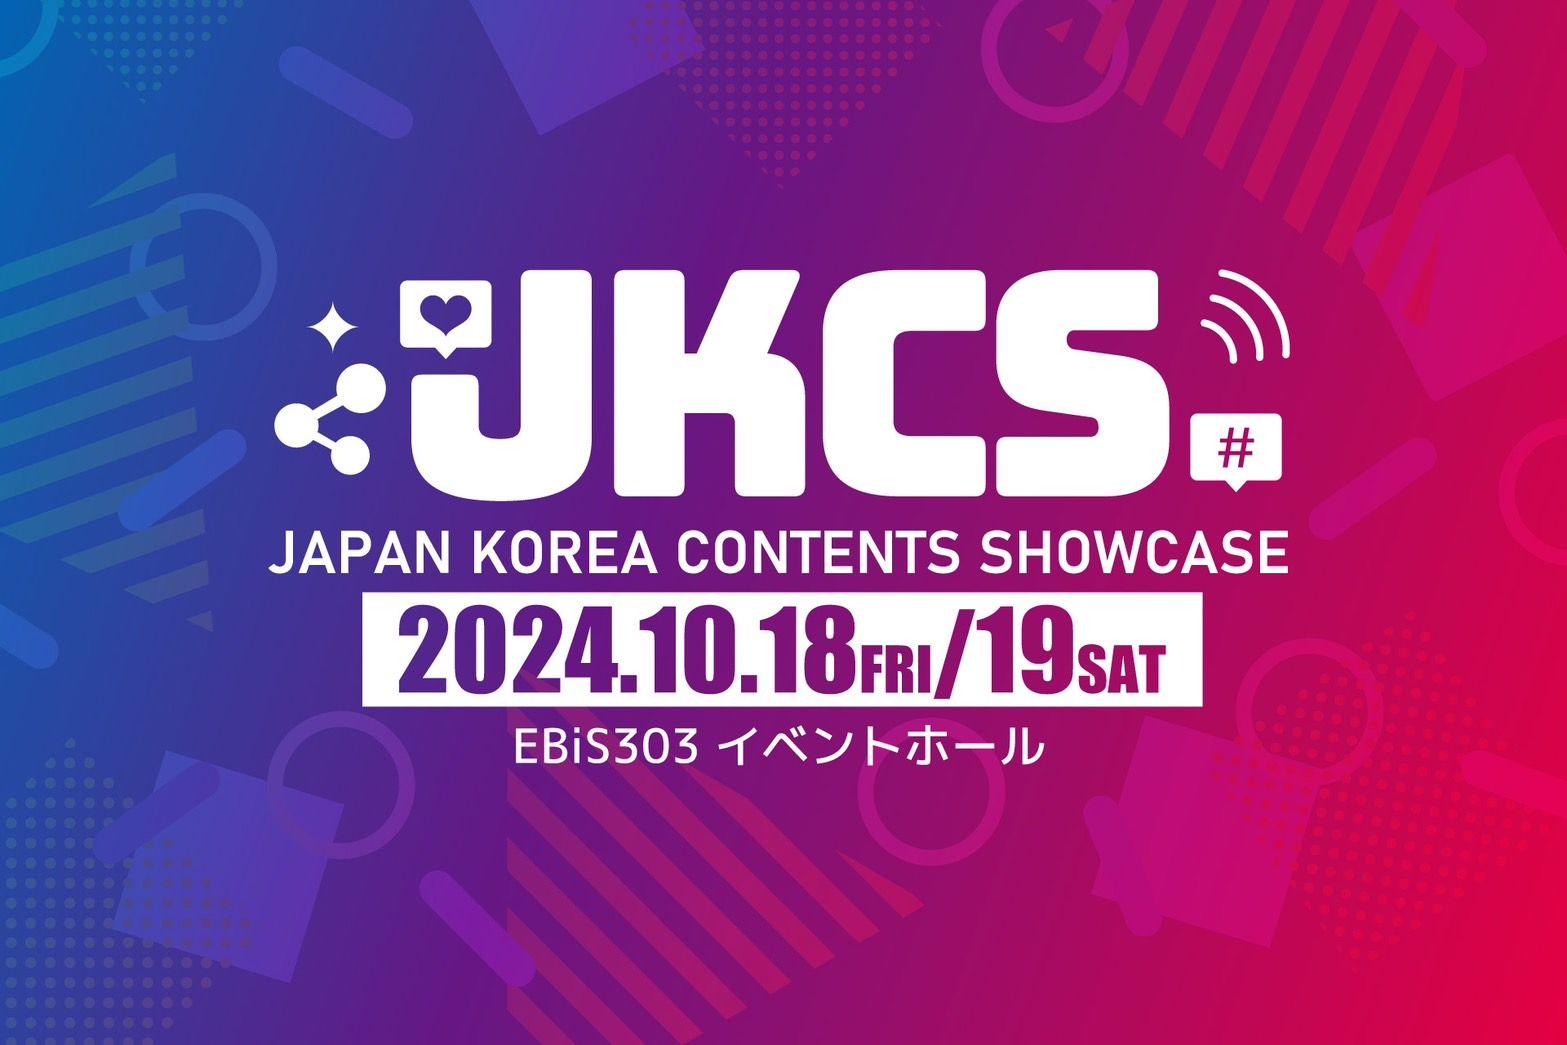 日韓のファッション・ビューティー・フードの最先端を体感できるイベント『JKCS2024』（Japan Korea Contents Showcase）初開催決定